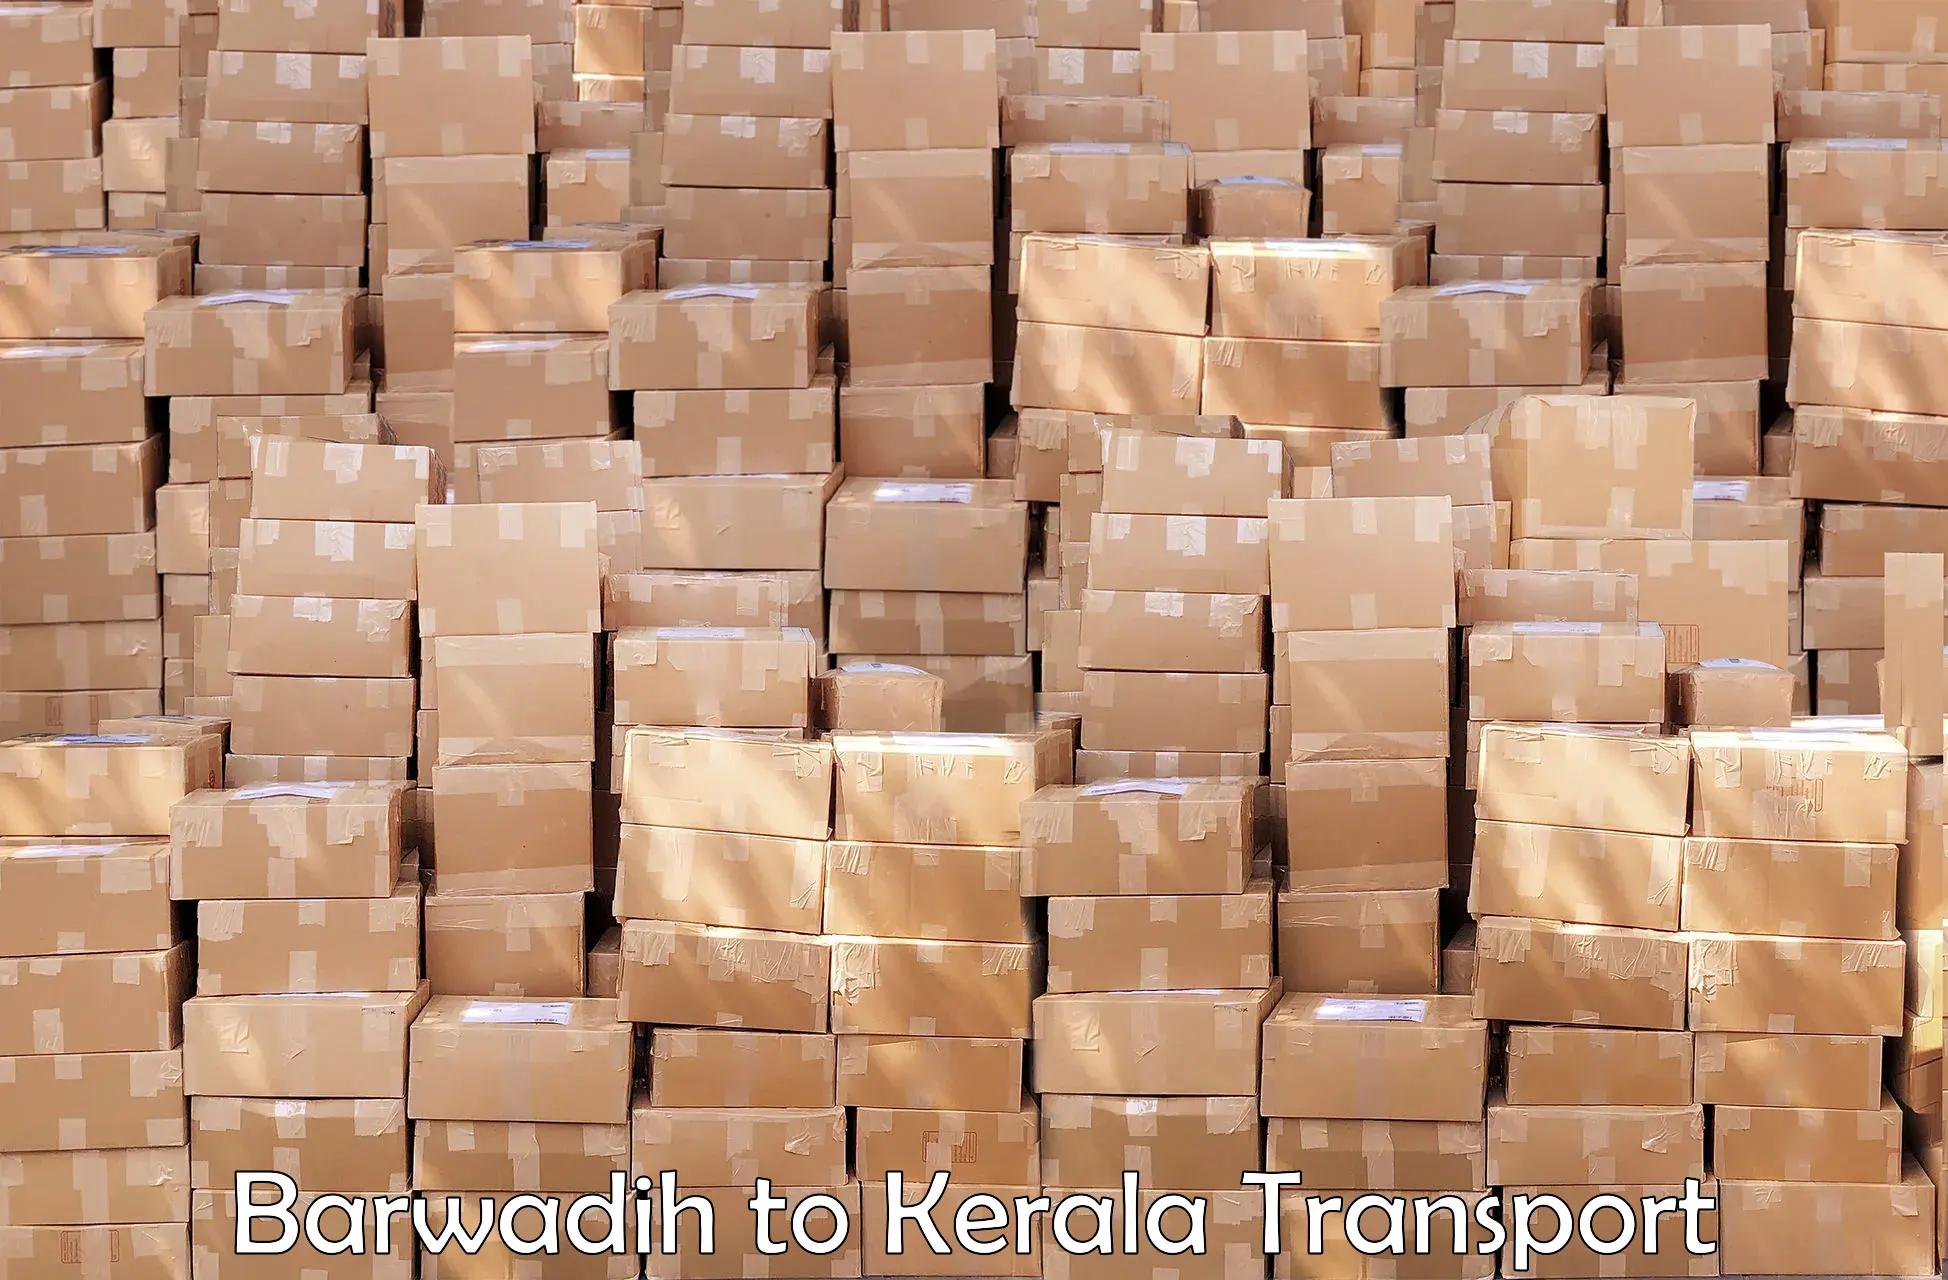 Cargo transport services in Barwadih to Thrissur